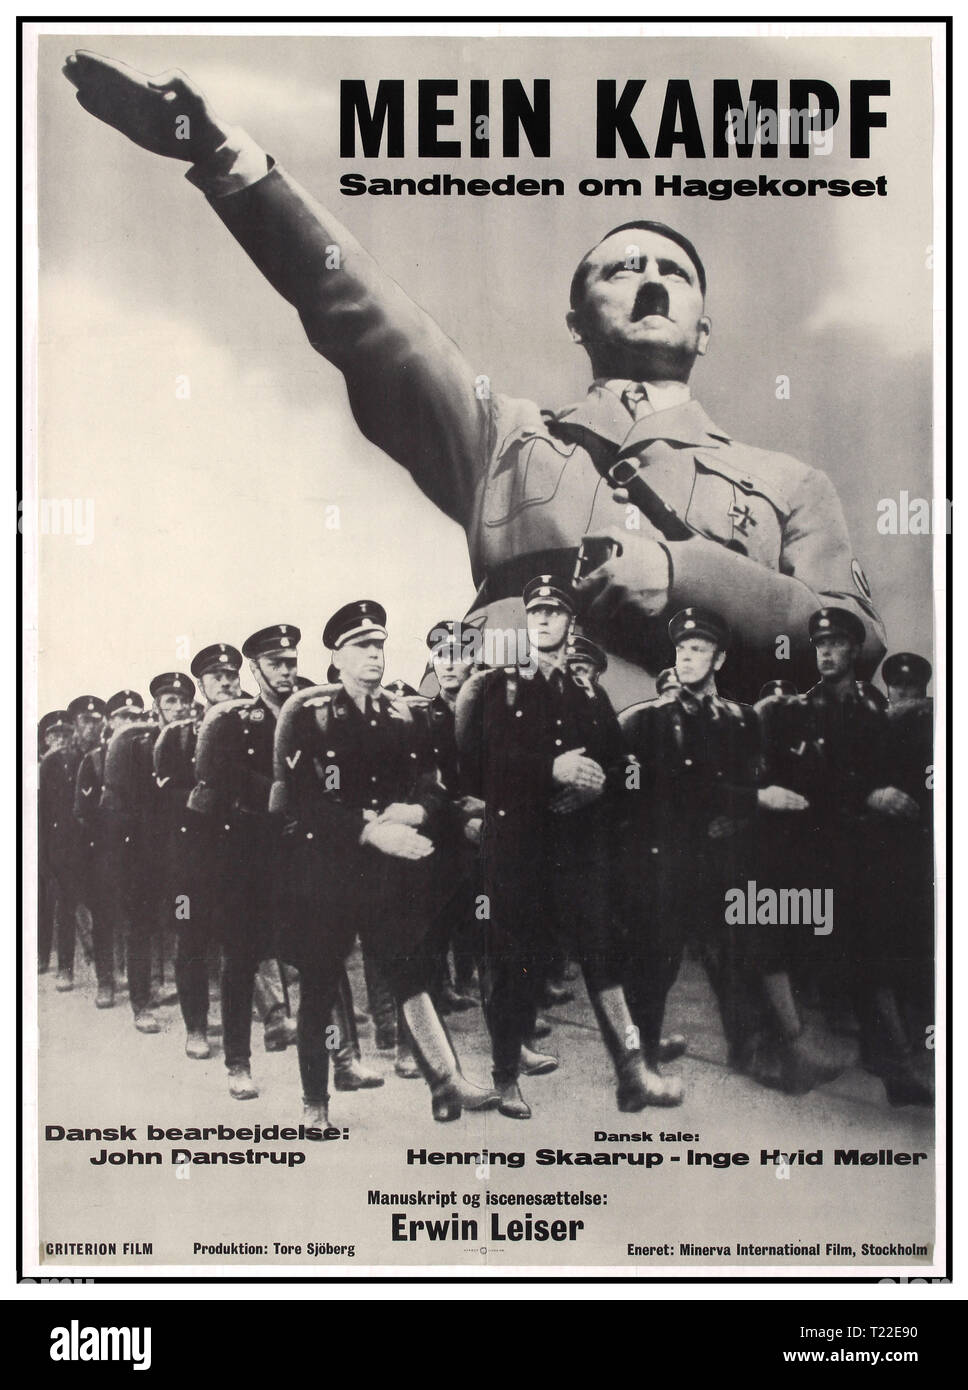 Mein Kampf Vintage 1960 póster de película danesa con Adolf Hitler saludando Heil Hitler - 'Mein Kampf - La verdad acerca de la esvástica" - dirigida por Erwin Leiser Dinamarca 1960. Foto de stock